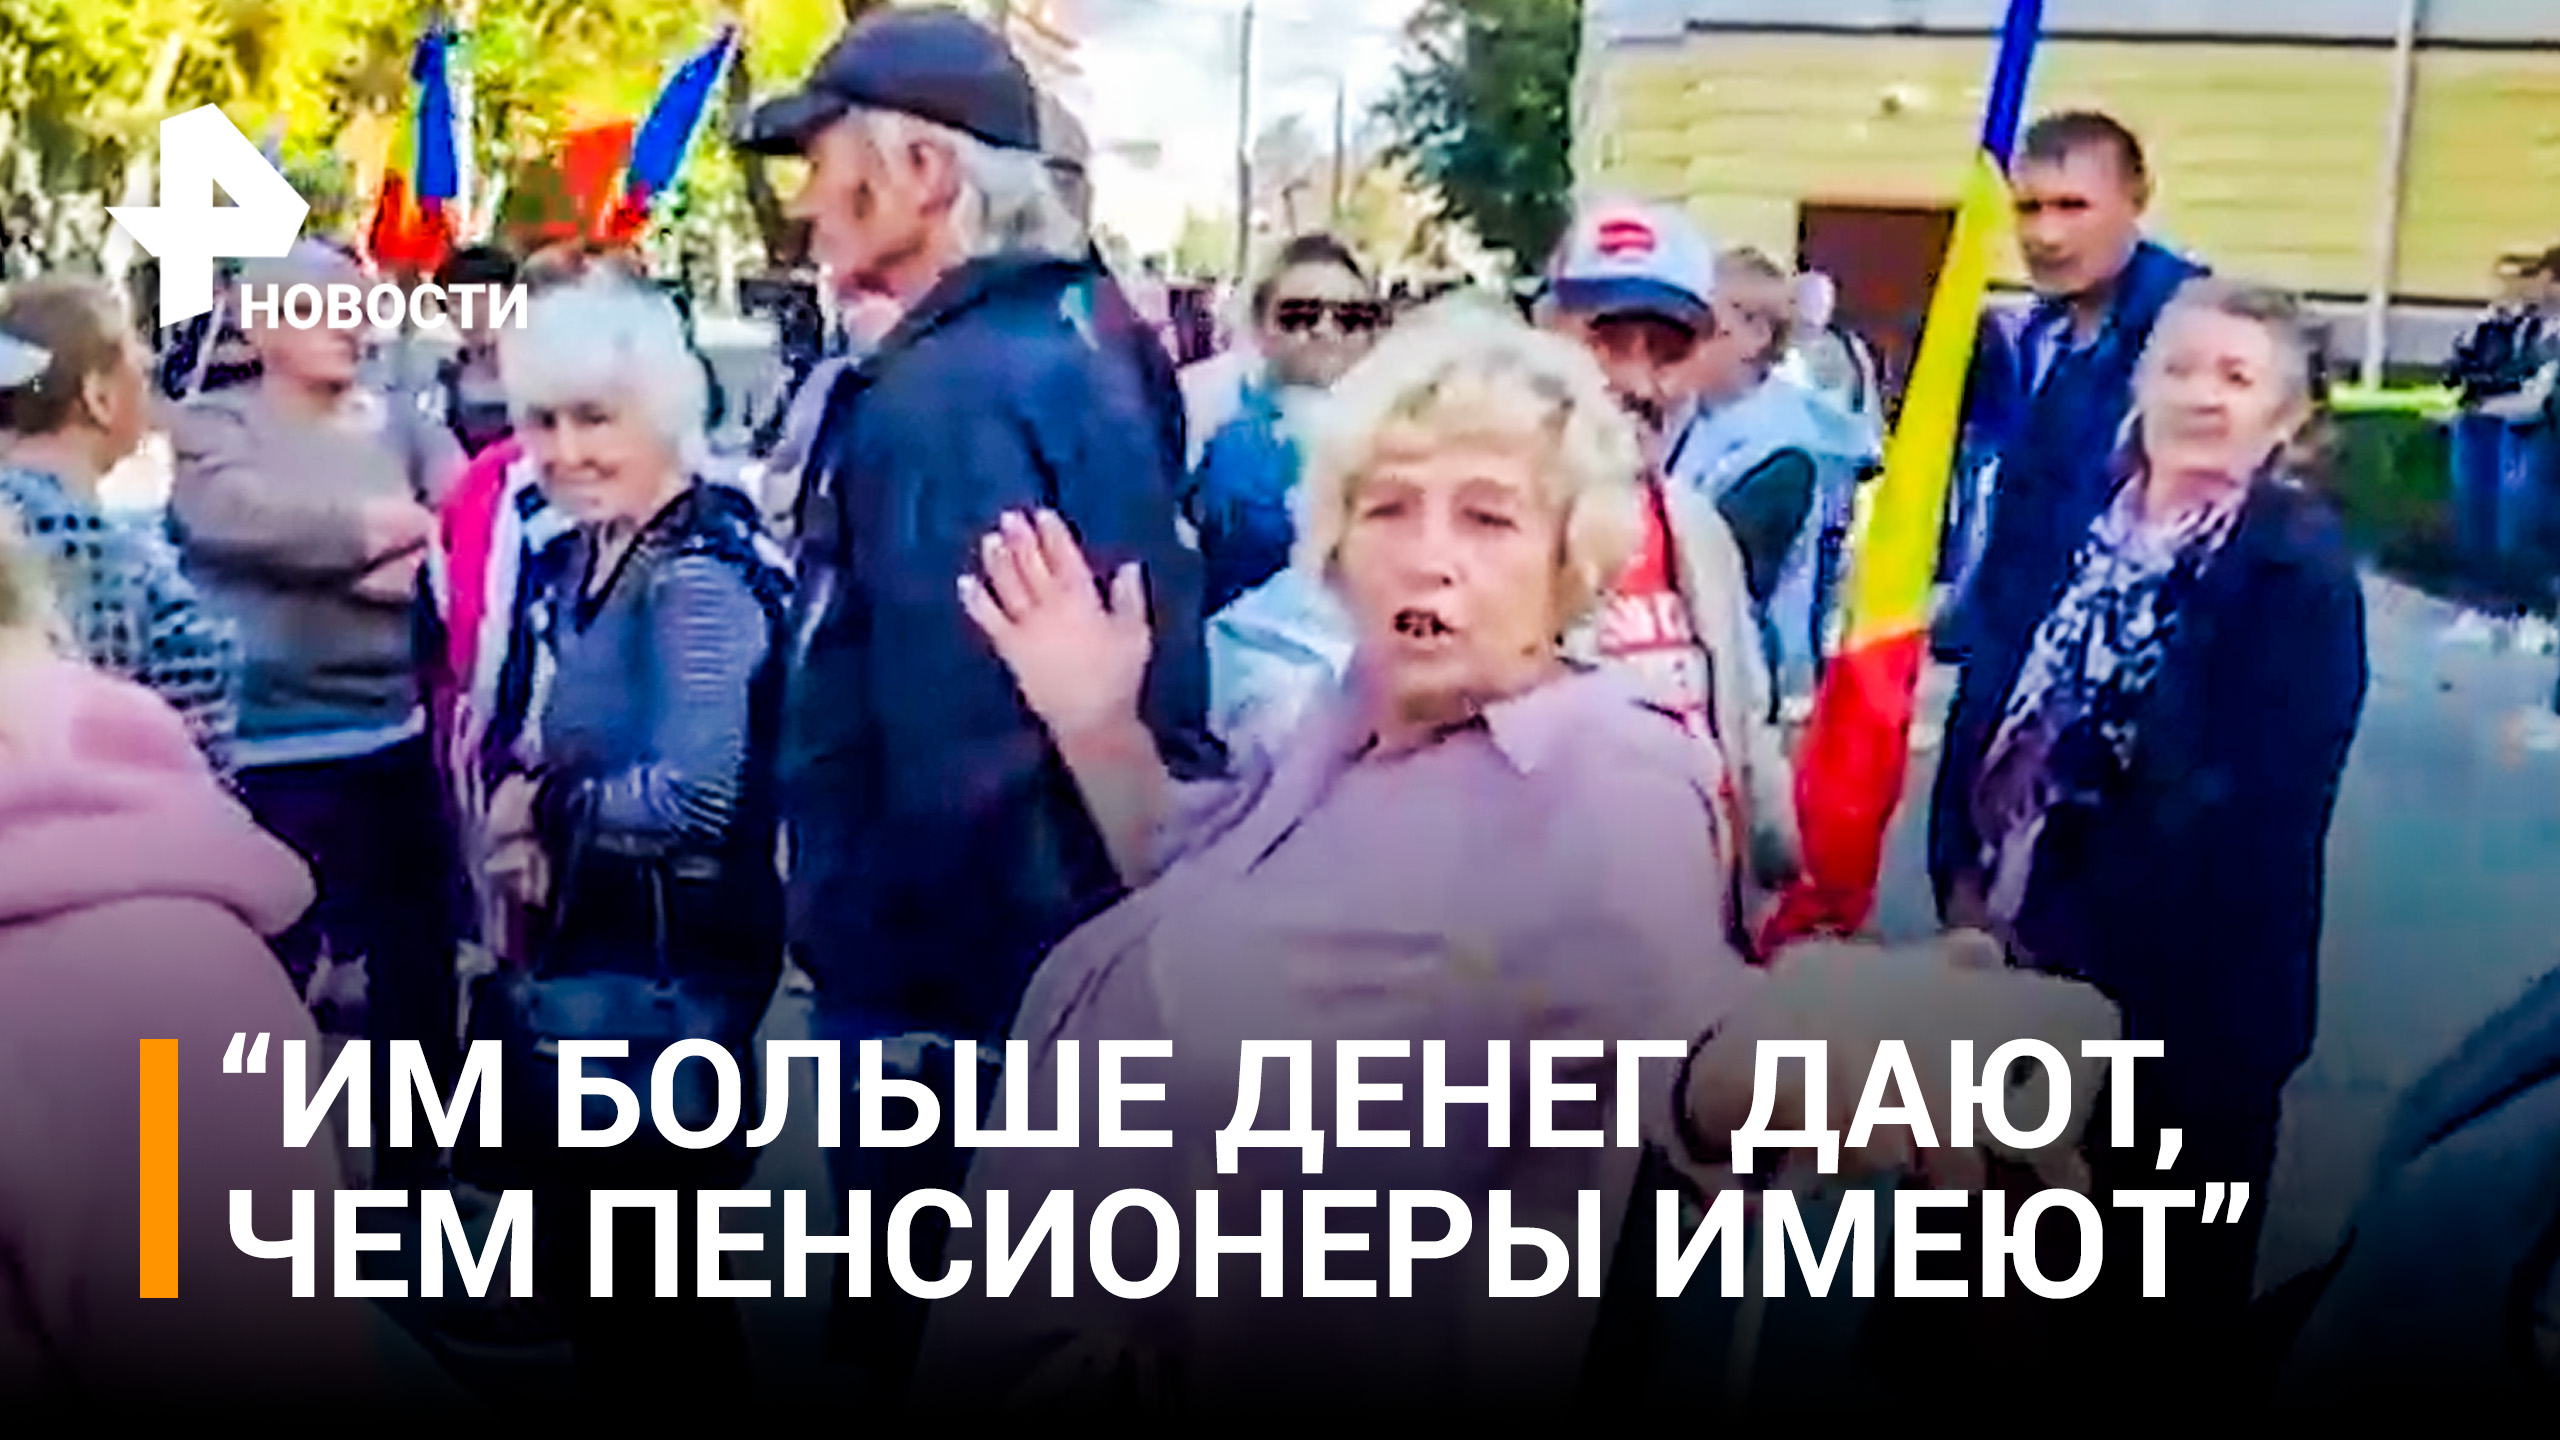 Молдаванка проехалась по украинским беженцам - протесты в Кишиневе против Санду / РЕН Новости